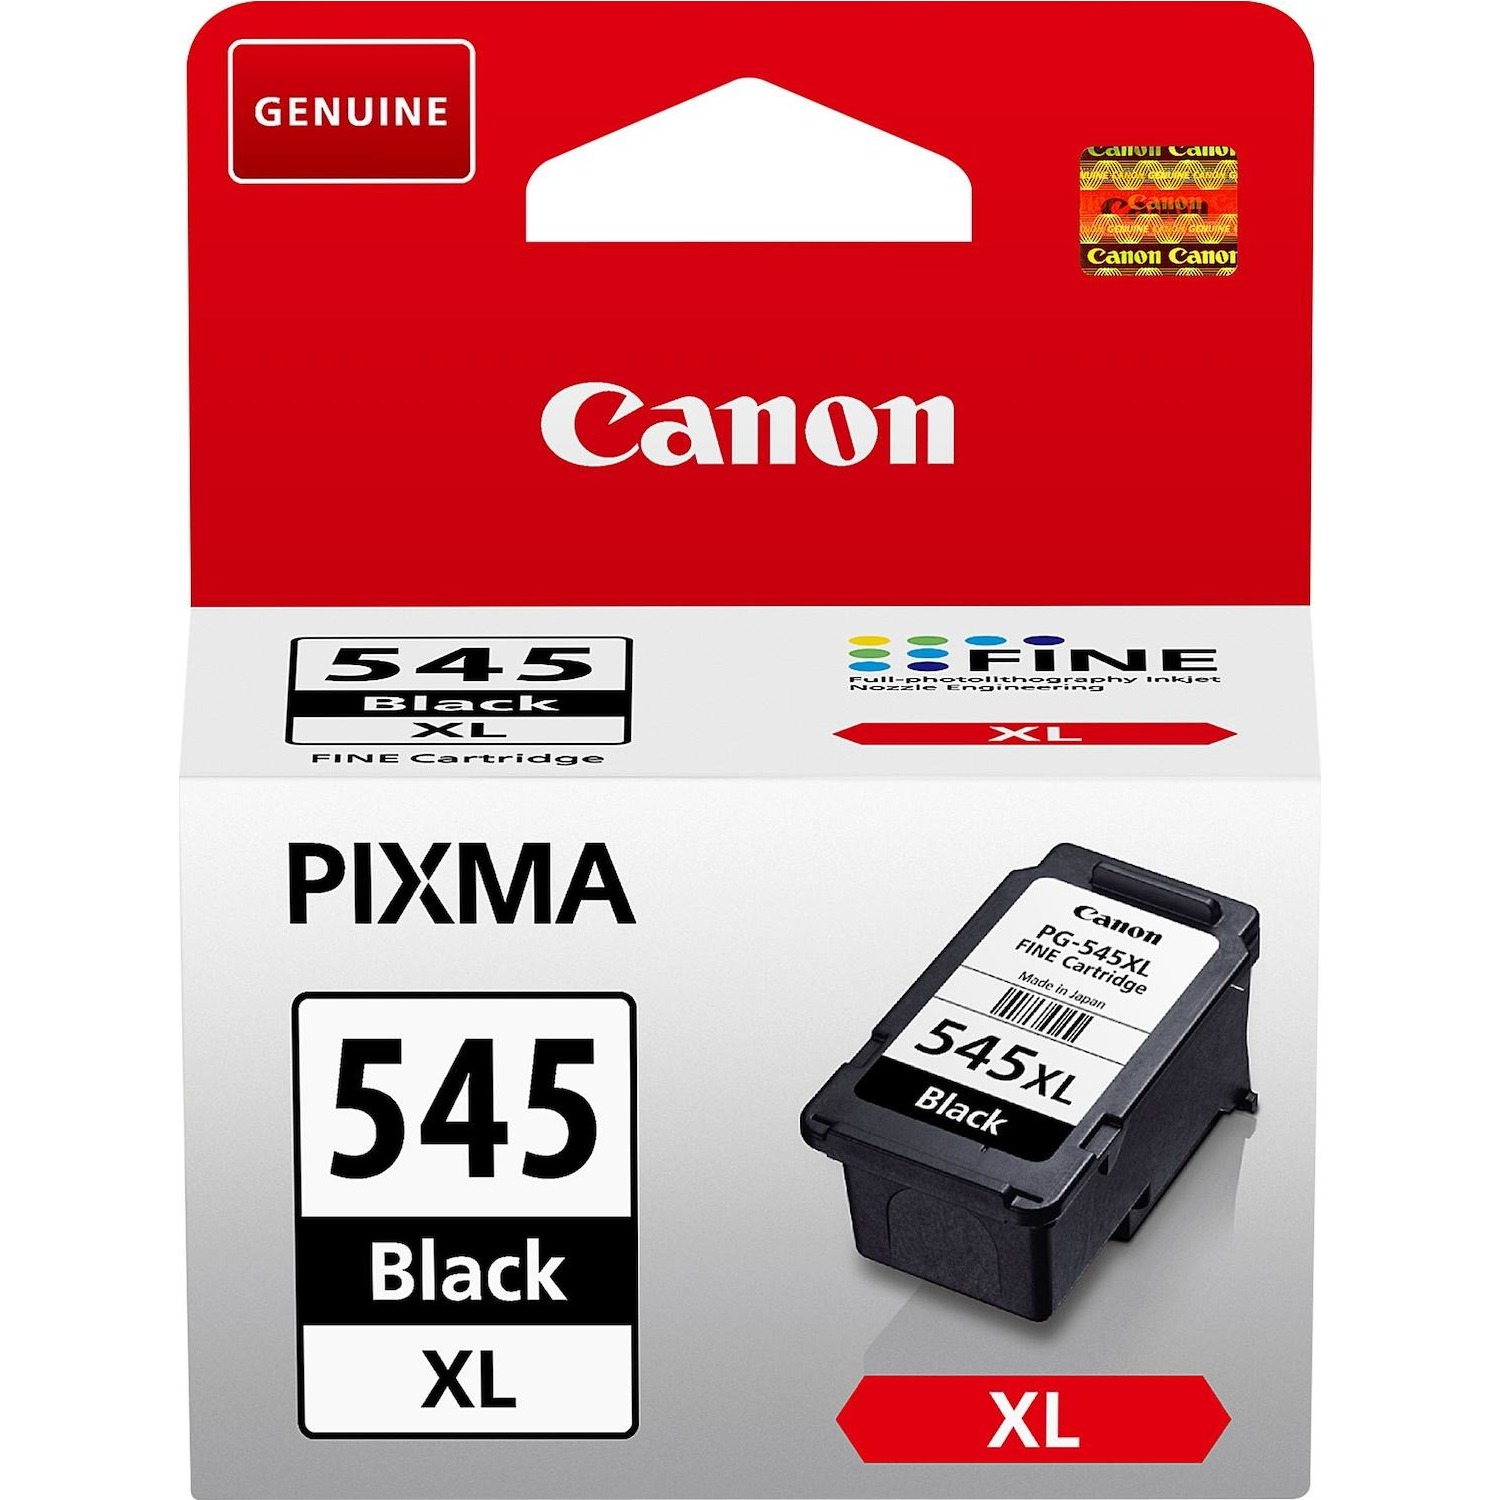 Immagine per Cartuccia Canon PG-545XL                          per TR4551 TR4550 IP2850 MG2450 MG2550 da DIMOStore